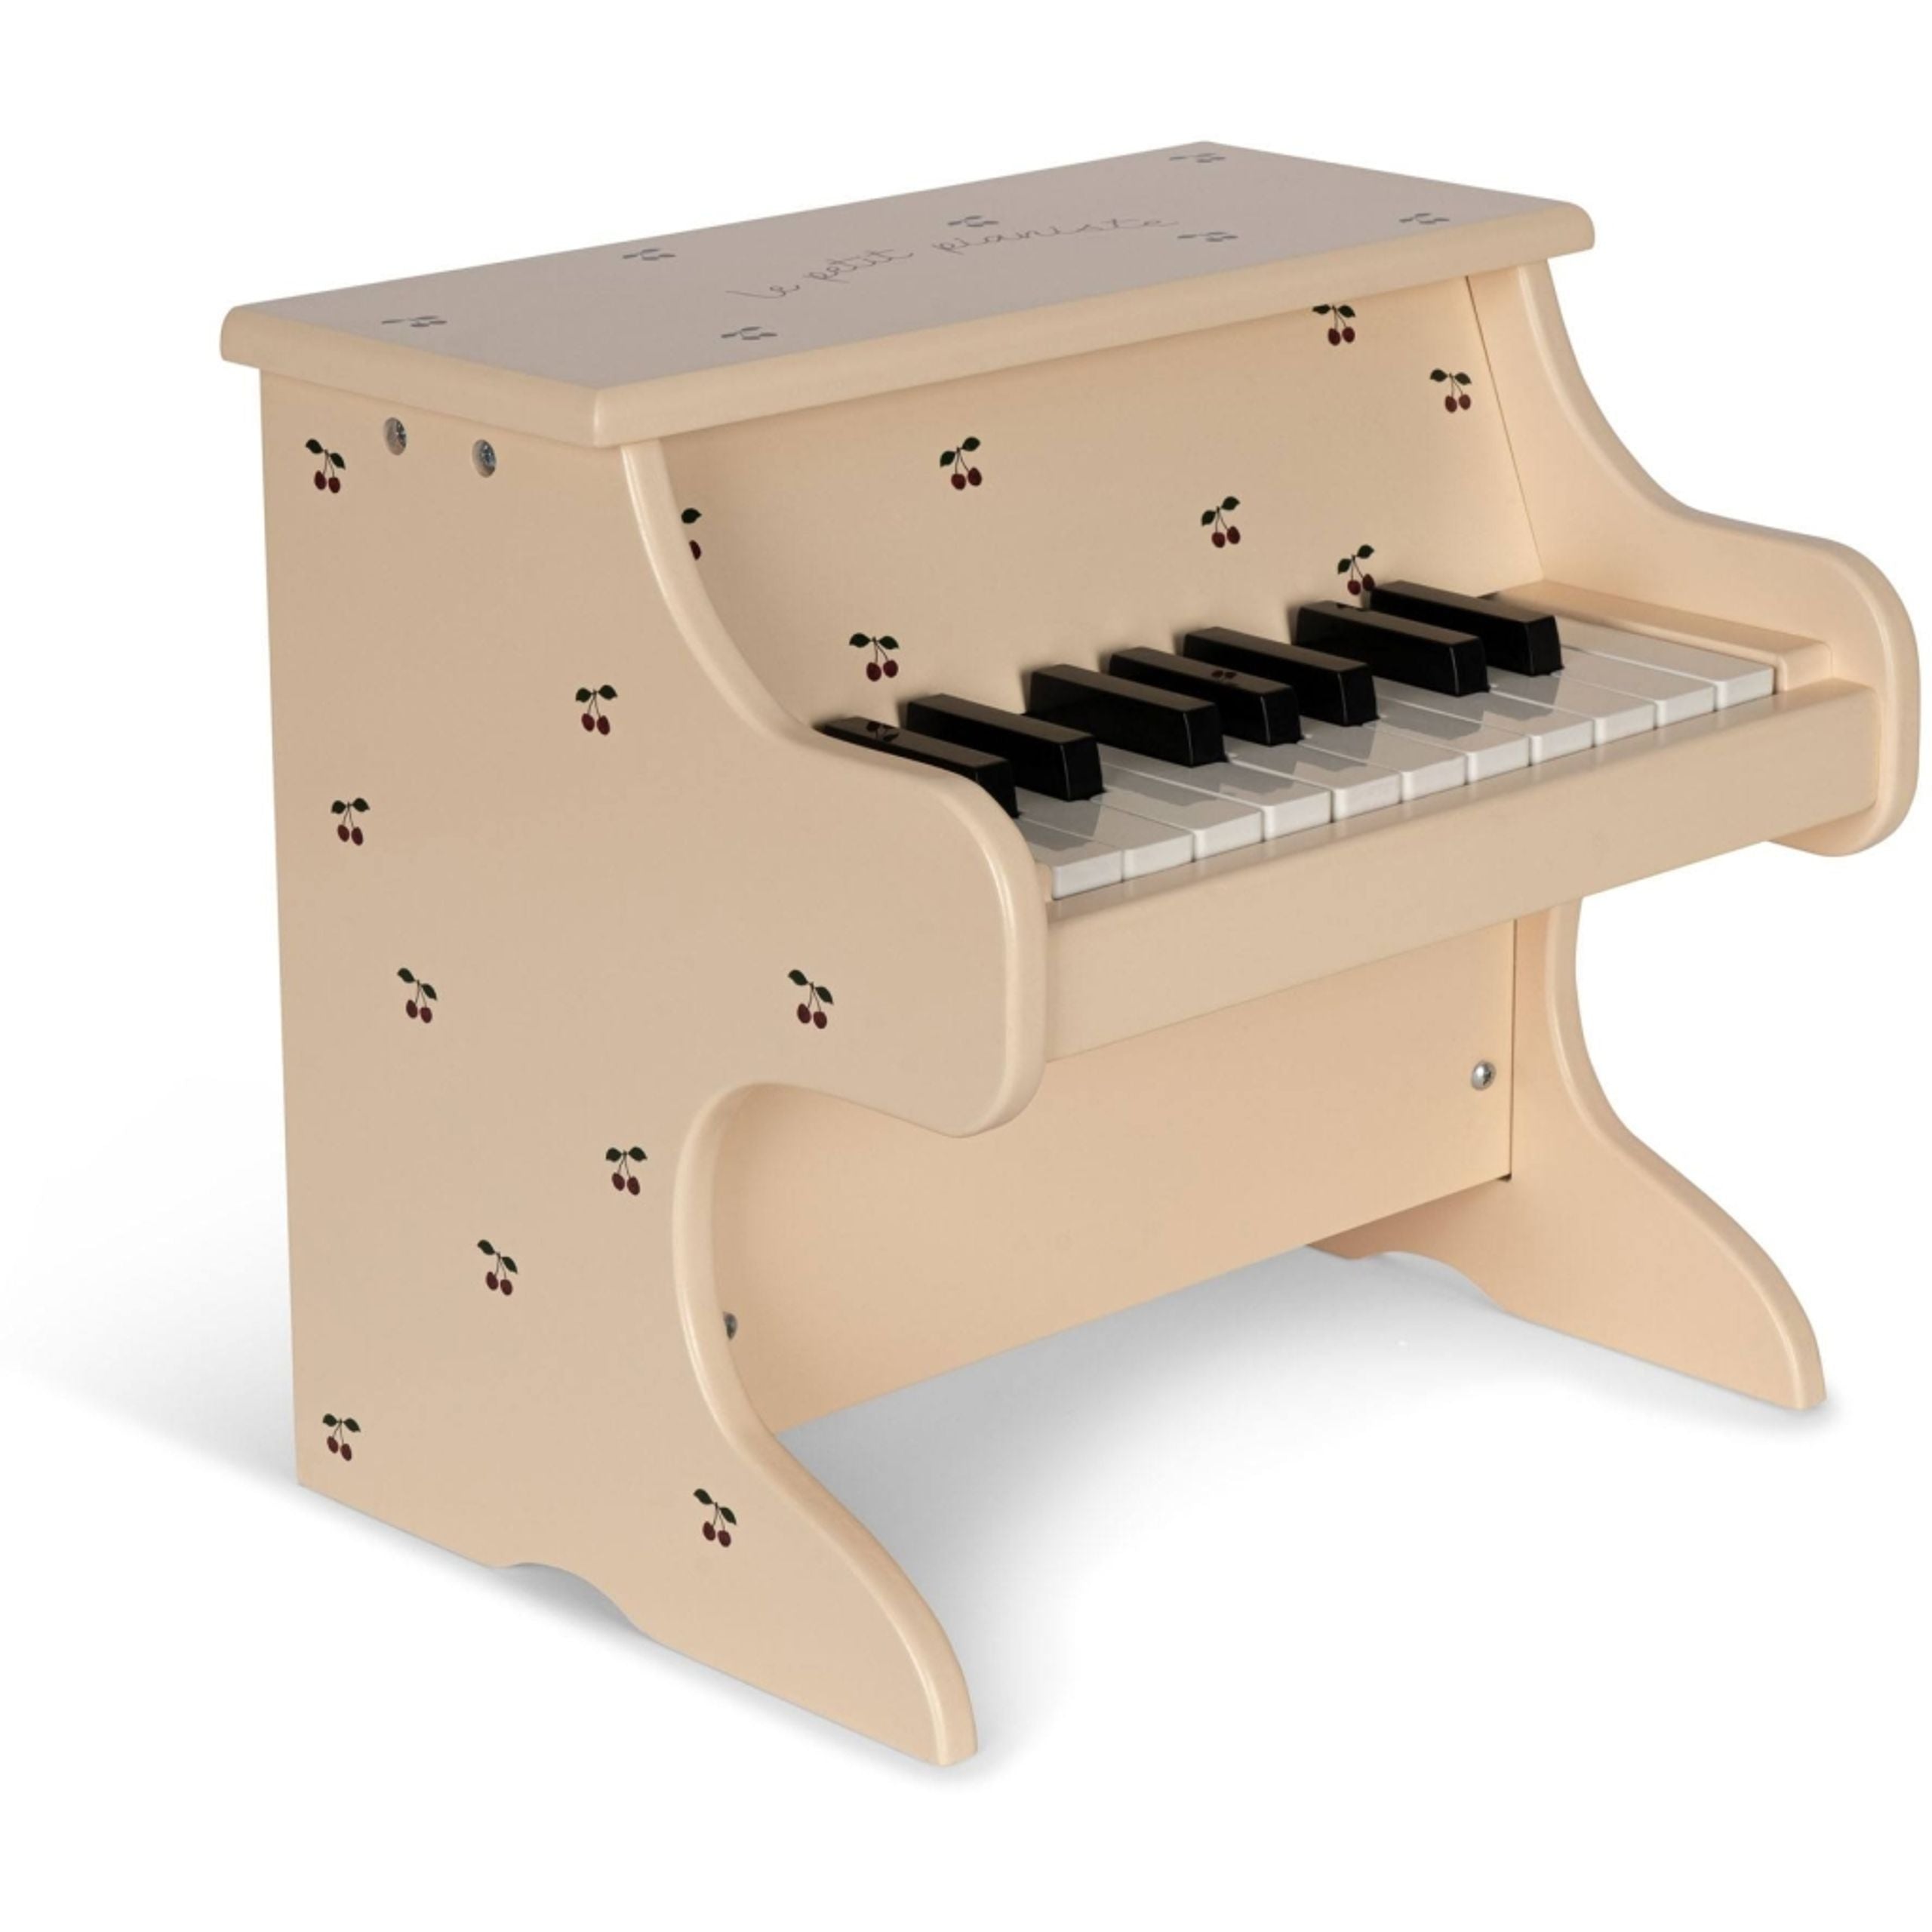 Kleines Klavier aus Holz für Kinder - Spielzeugklavier mit echten Tasten und Melodien